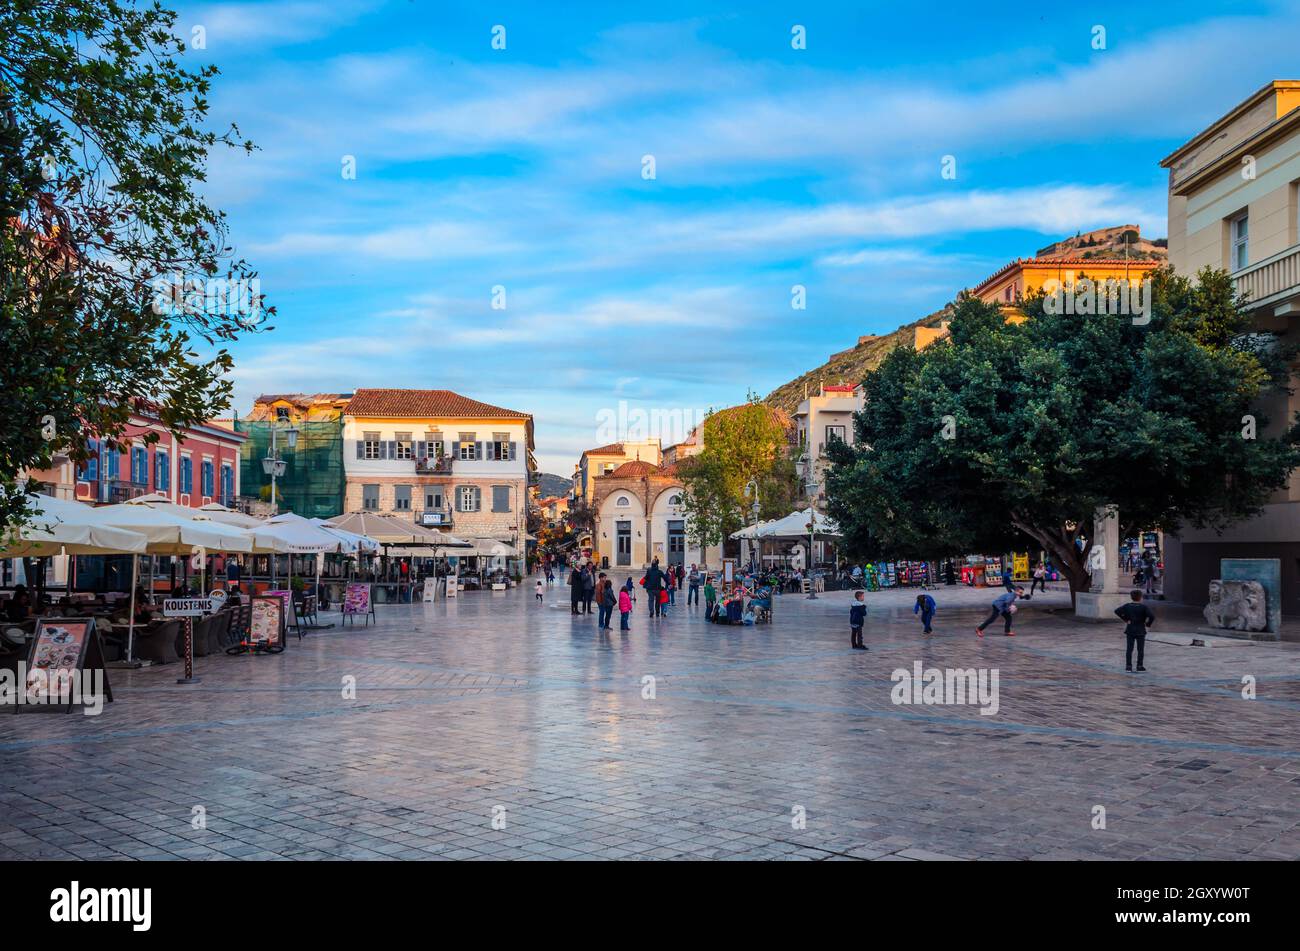 Nafplio-Grèce, place Syntagma - la place historique de la ville située dans la vieille ville. Banque D'Images